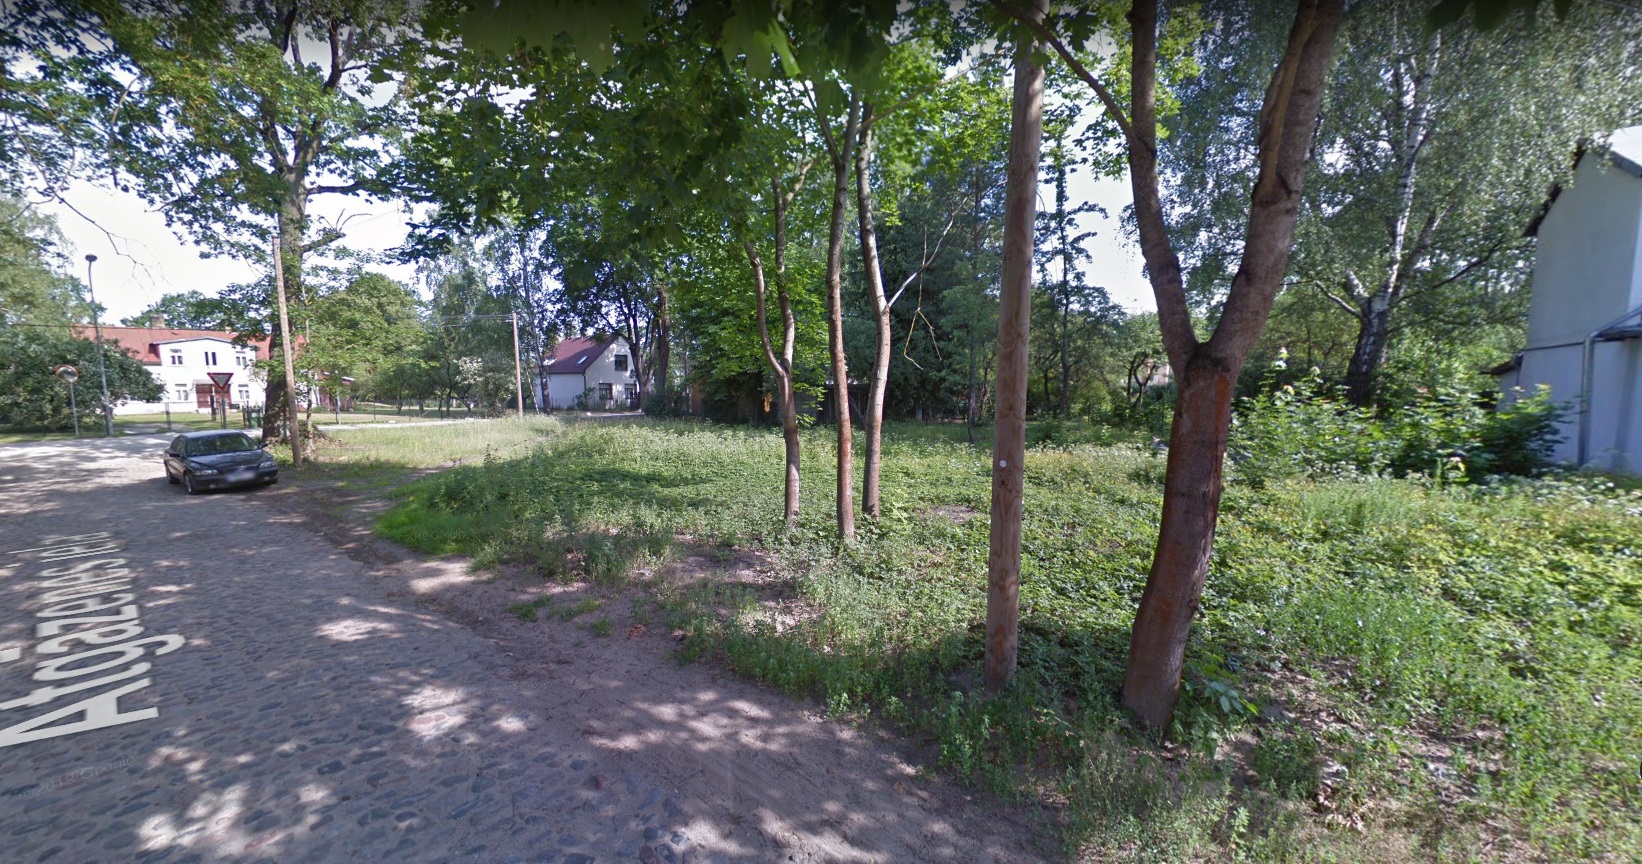 Land plot for sale, Dīķa street - Image 1